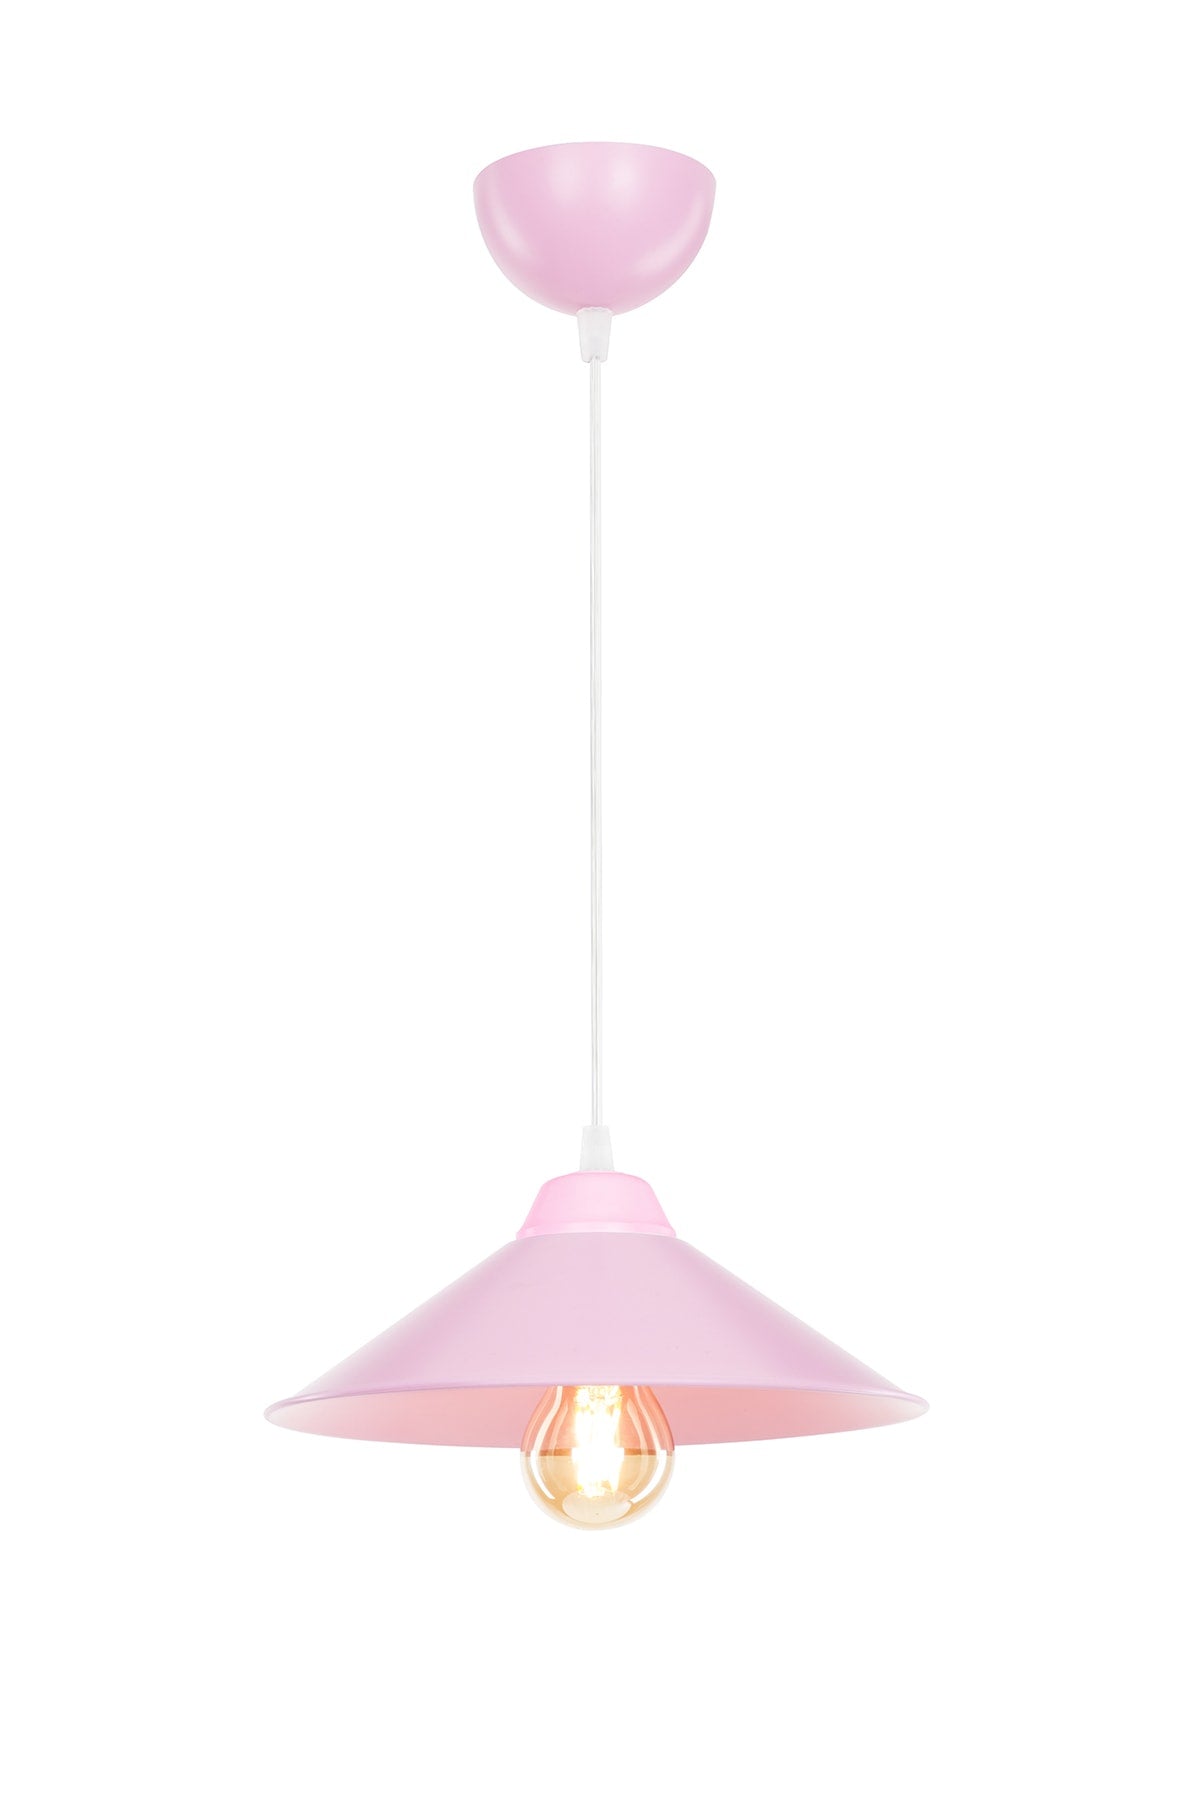 Pink Pendant Lamp Chandelier Children's Room Living Room Kitchen Hallway Bedroom Lamp